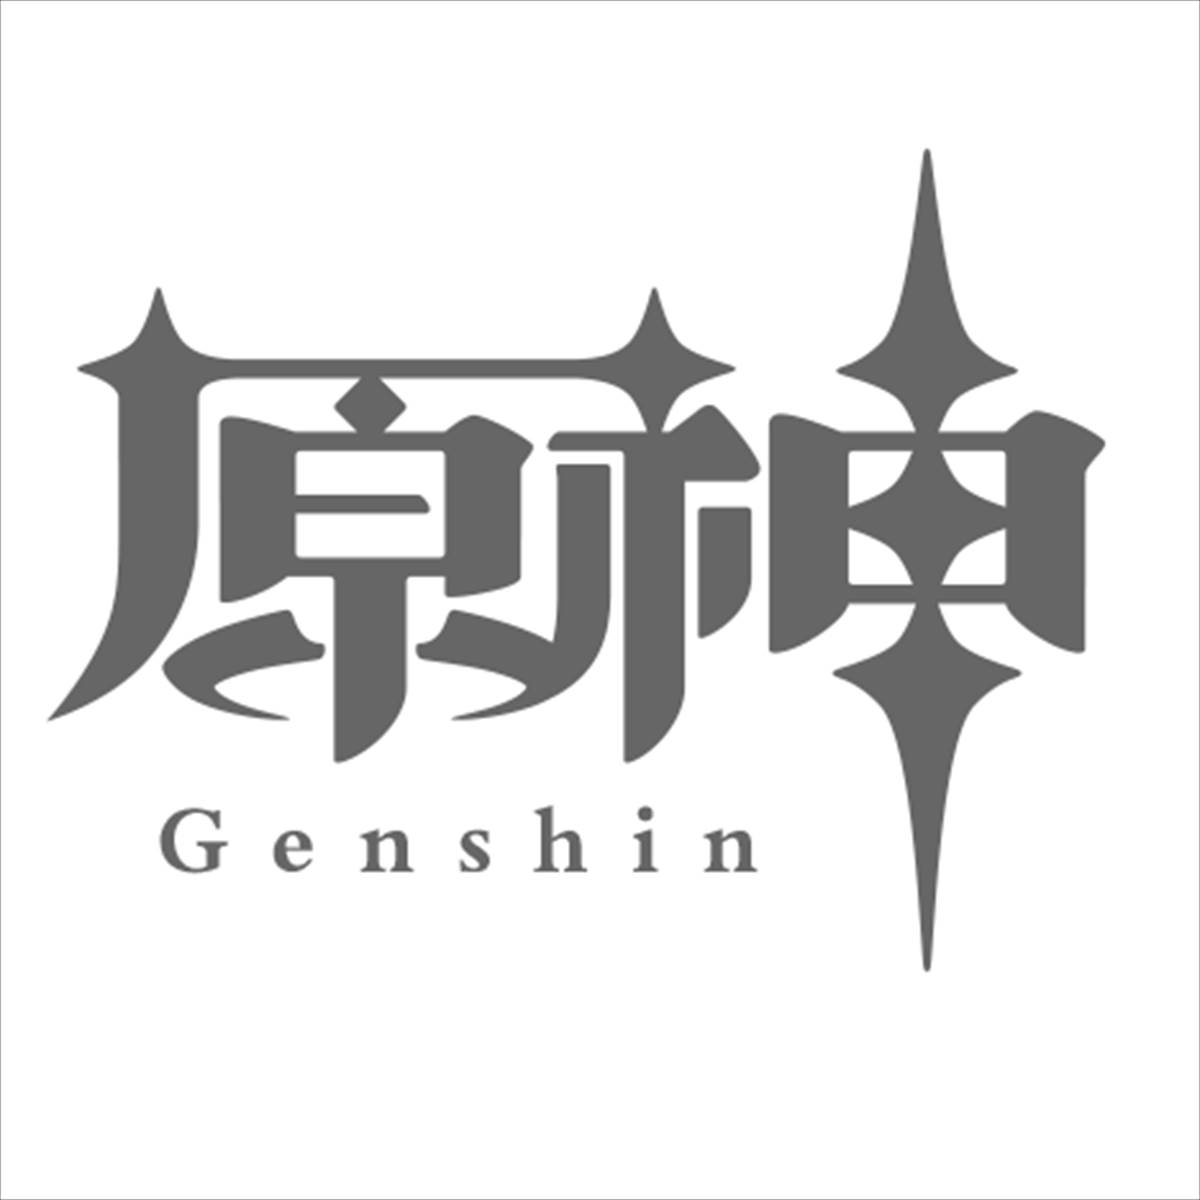 [Harajin] Quelles sont les cartes solides recommandées dans les sept jeux de cartes St. Summon?